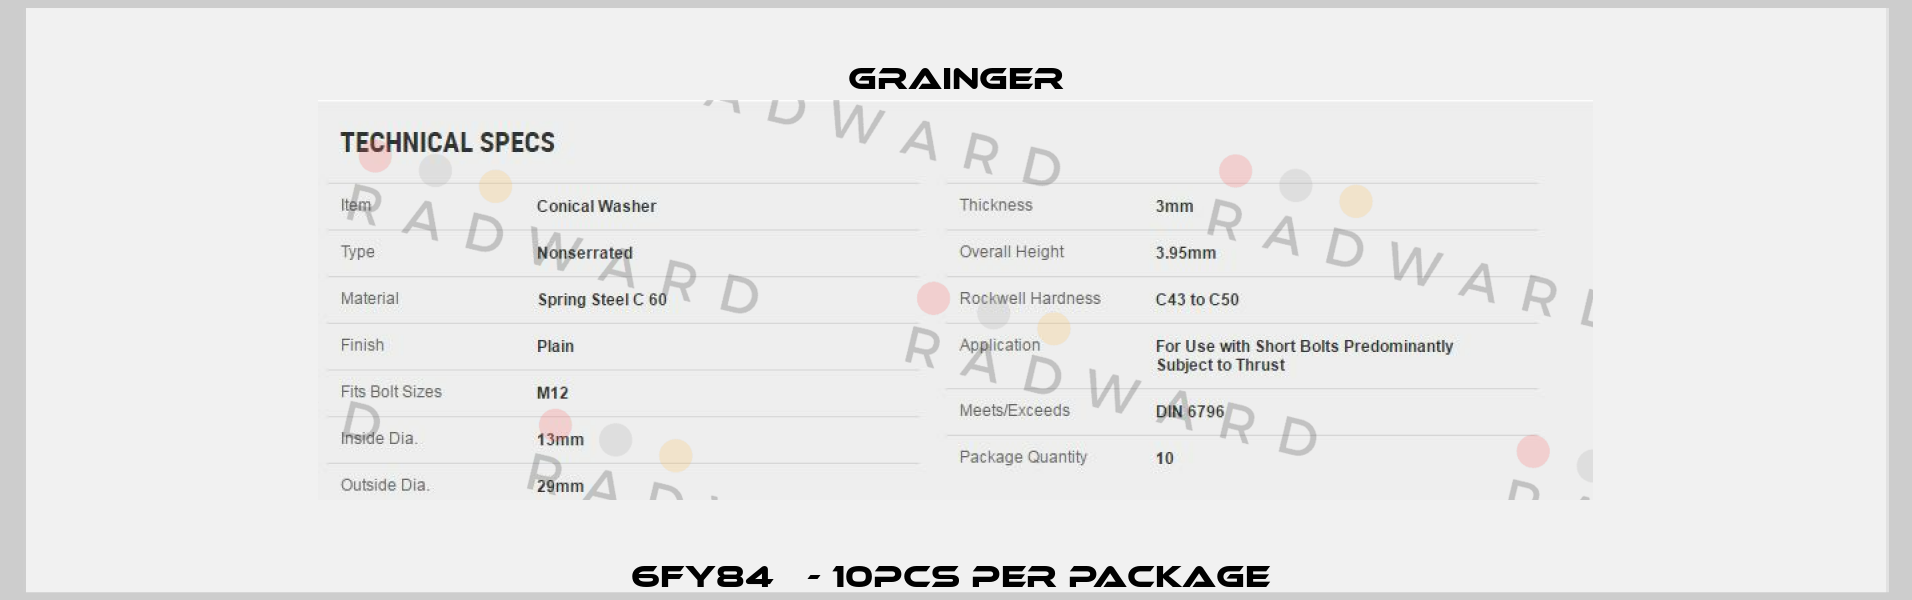 6FY84   - 10pcs per package  Grainger